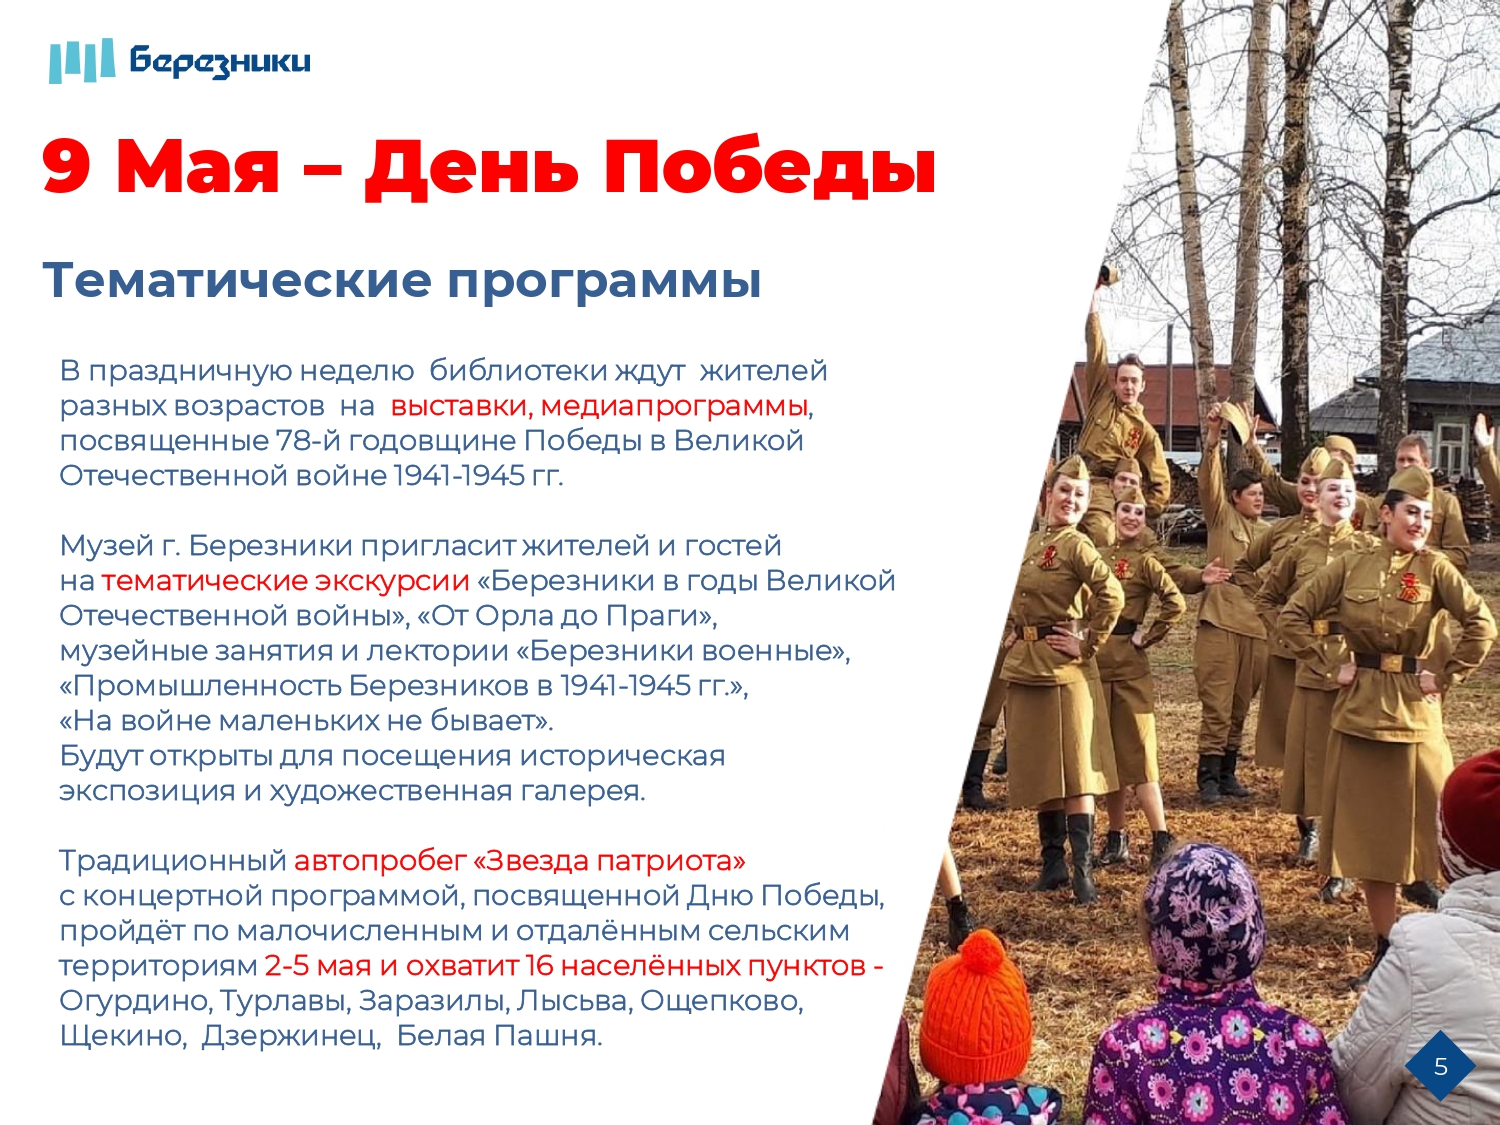 9 апреля 2023 праздник. Крым майские праздники 2023 официальные.